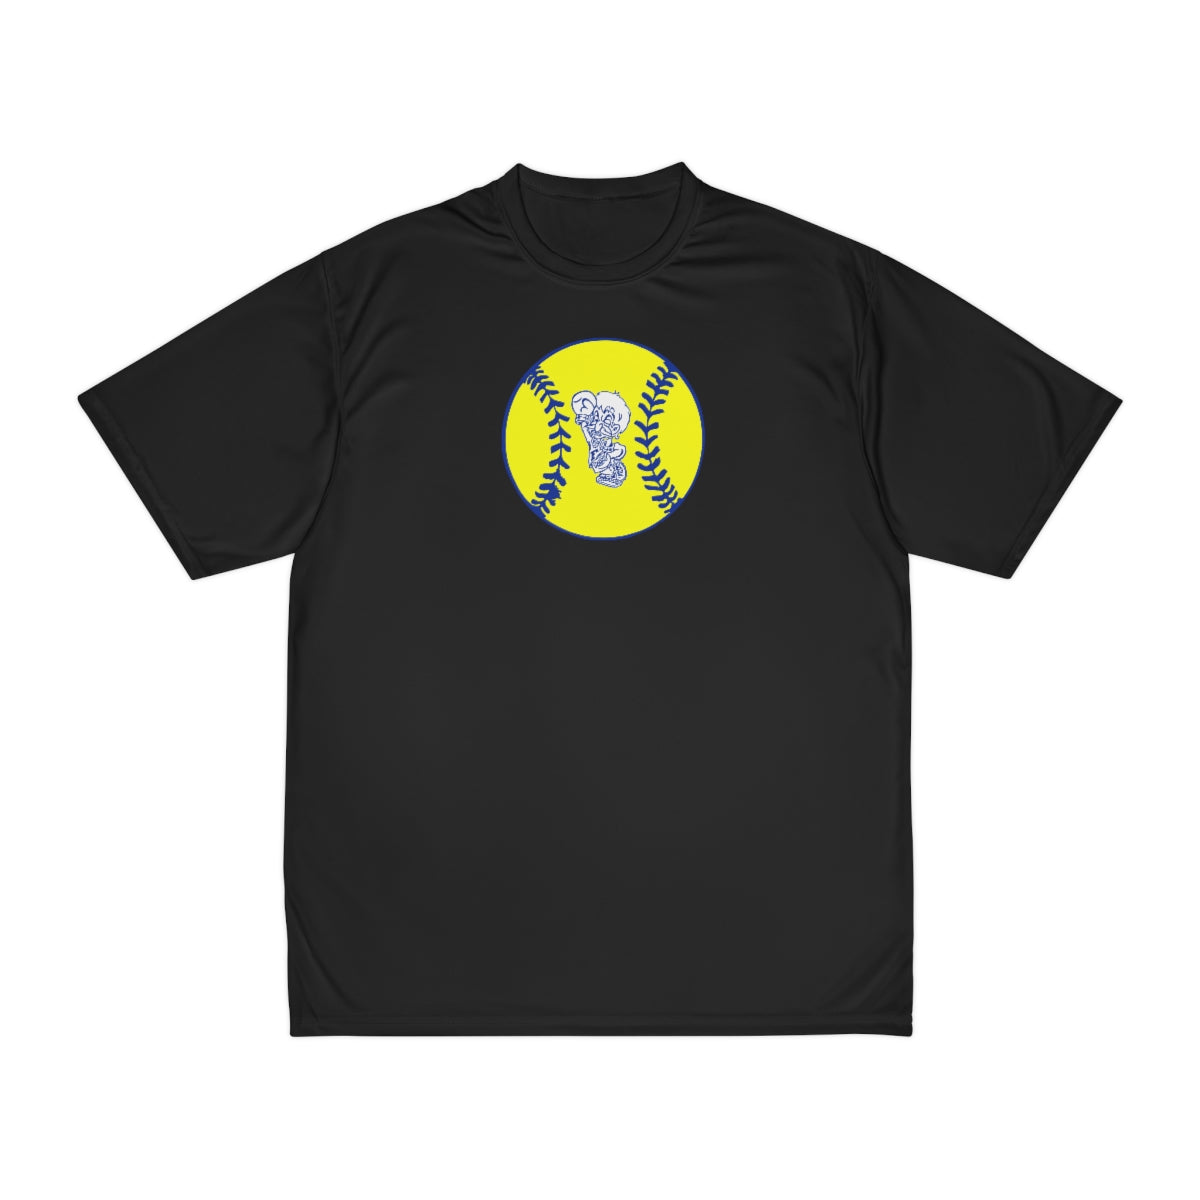 Freeburg Midgets Softball Performance T-Shirt